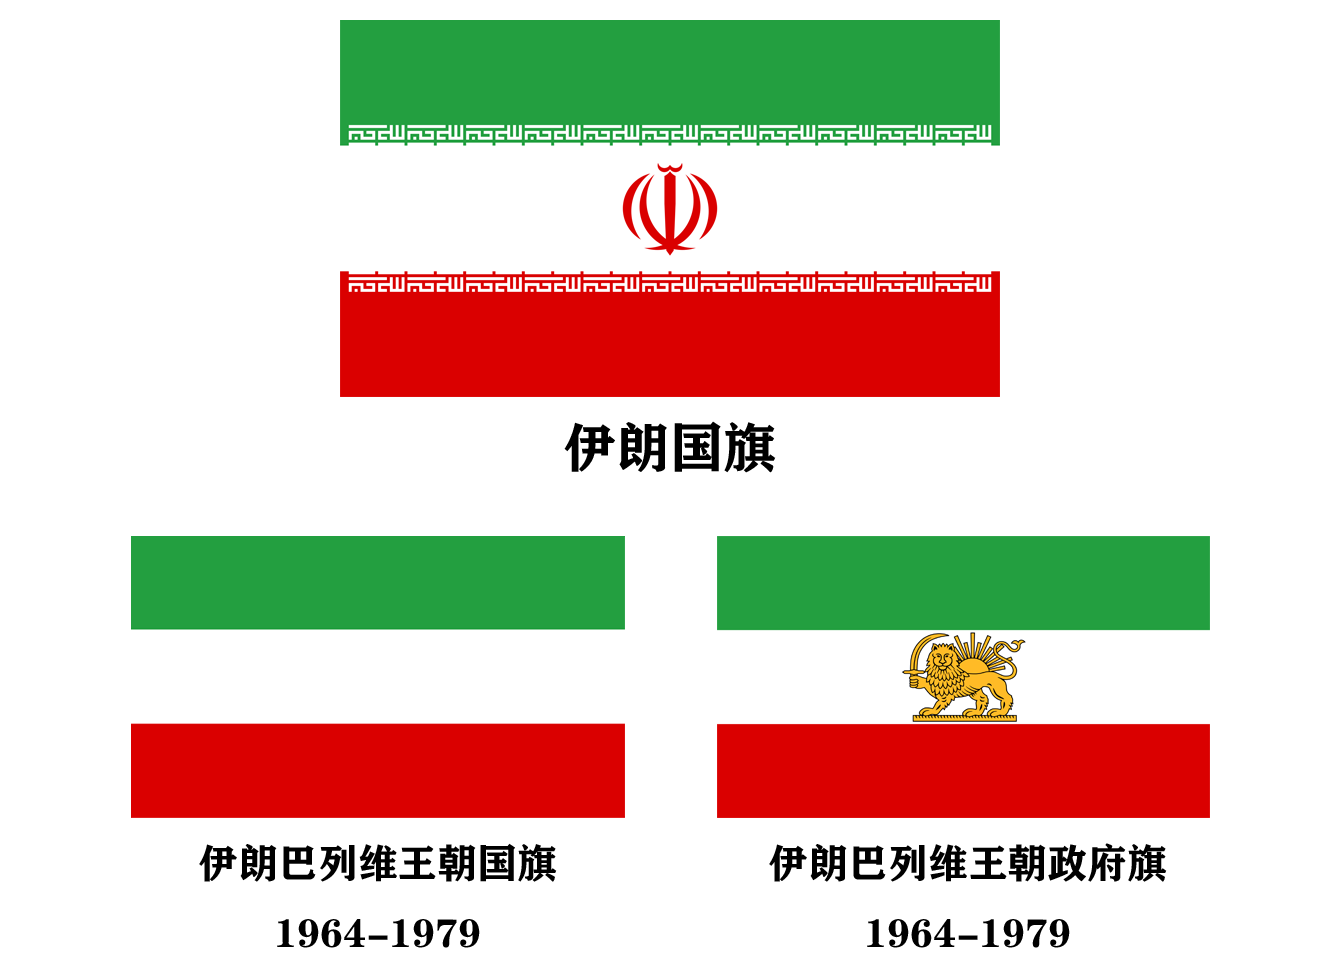 美国足球协会使用伊朗旧版国旗,引发伊朗抗议